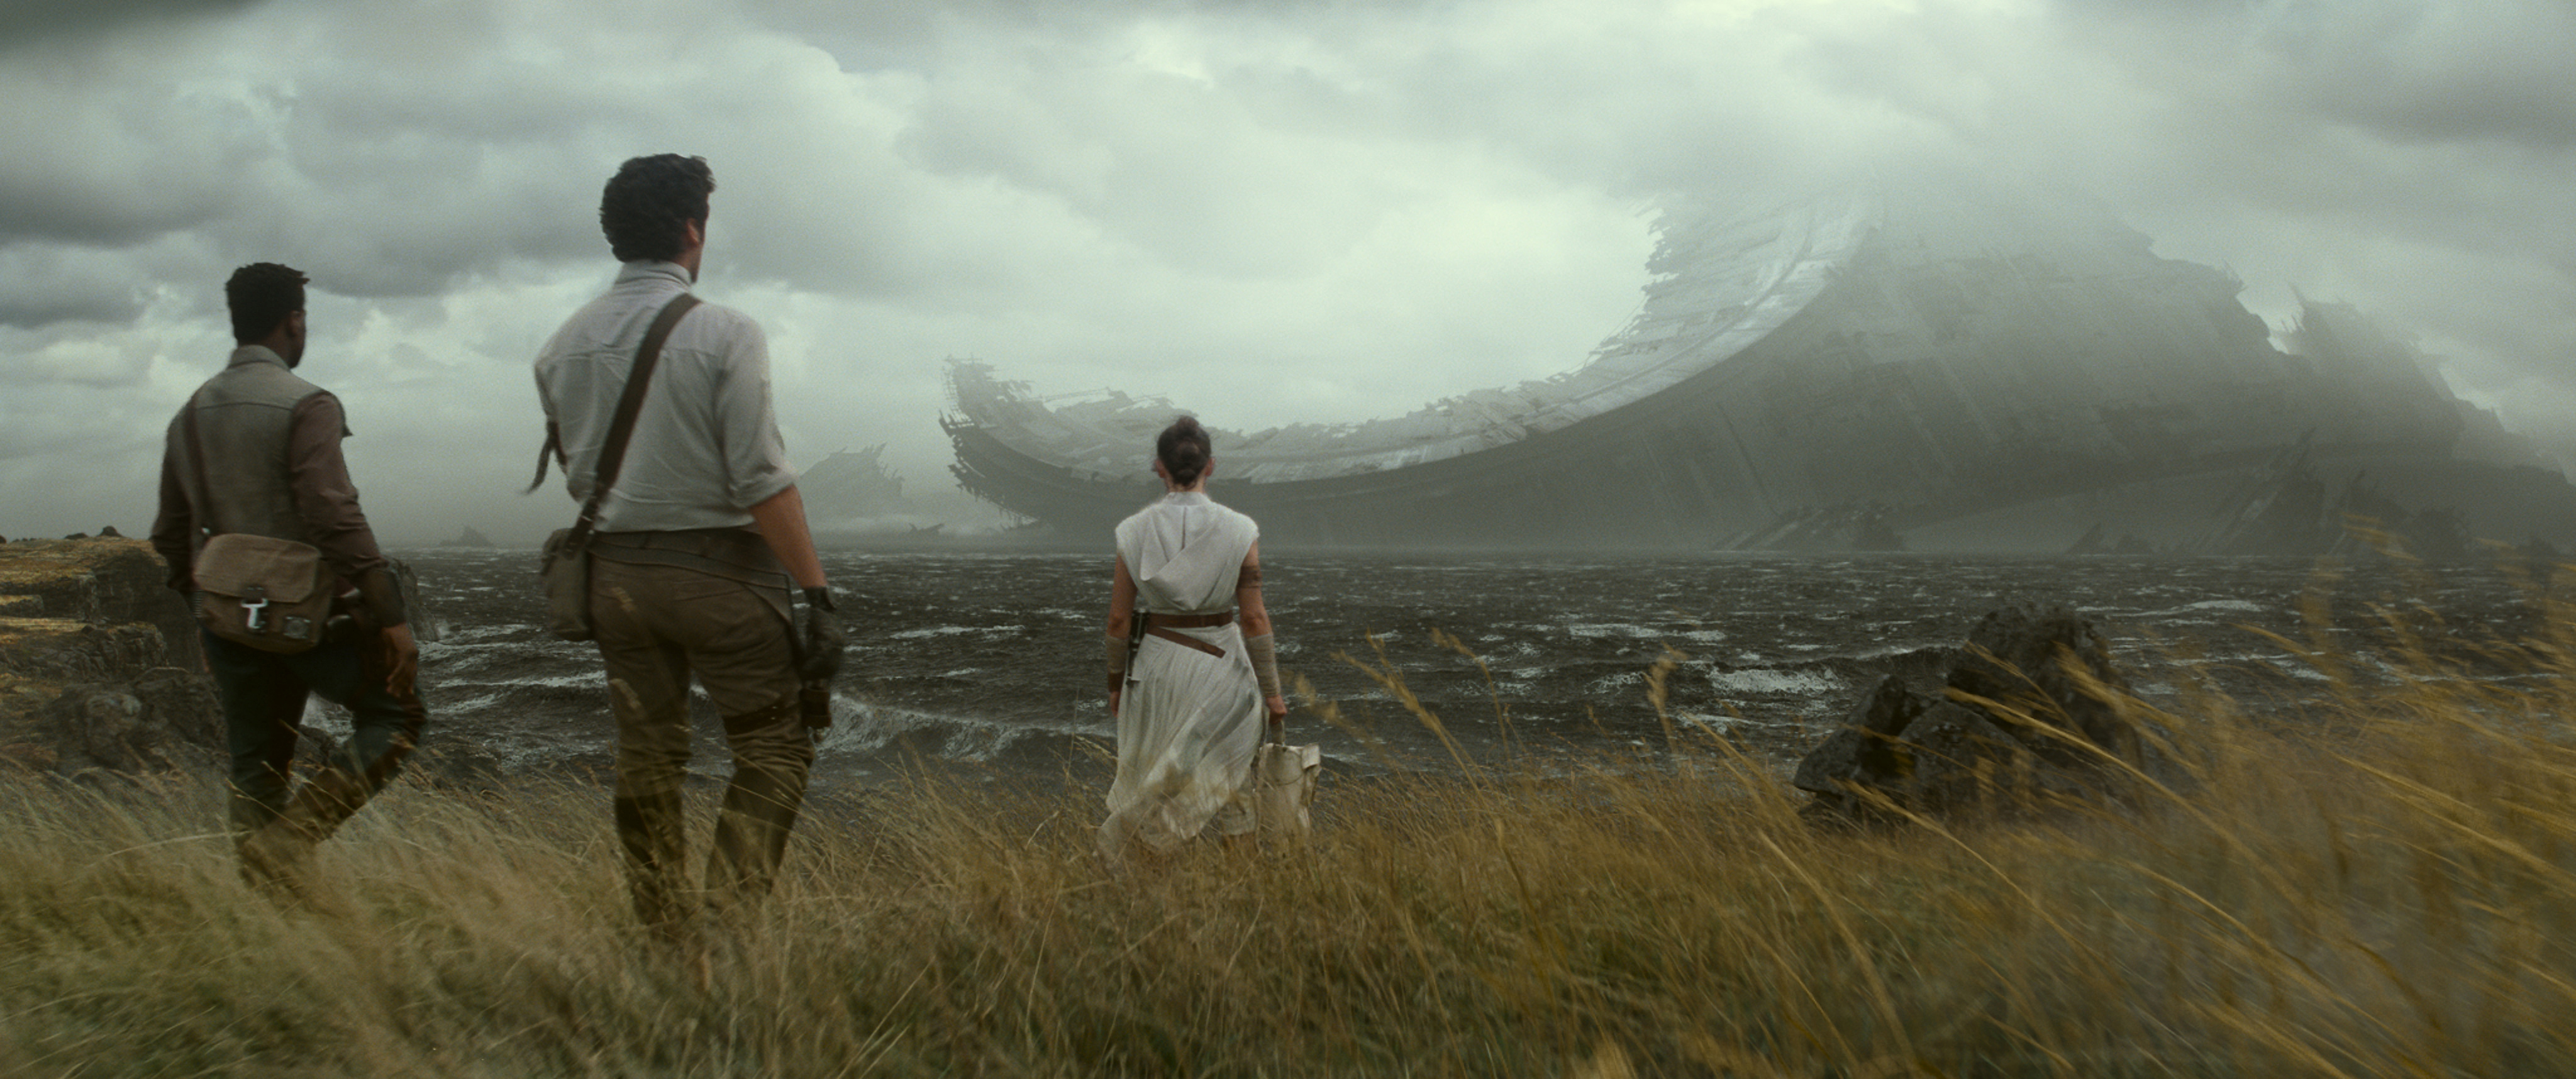 The Rise of Skywalker pone fin a la saga y conecta con elementos de la trilogía original. 